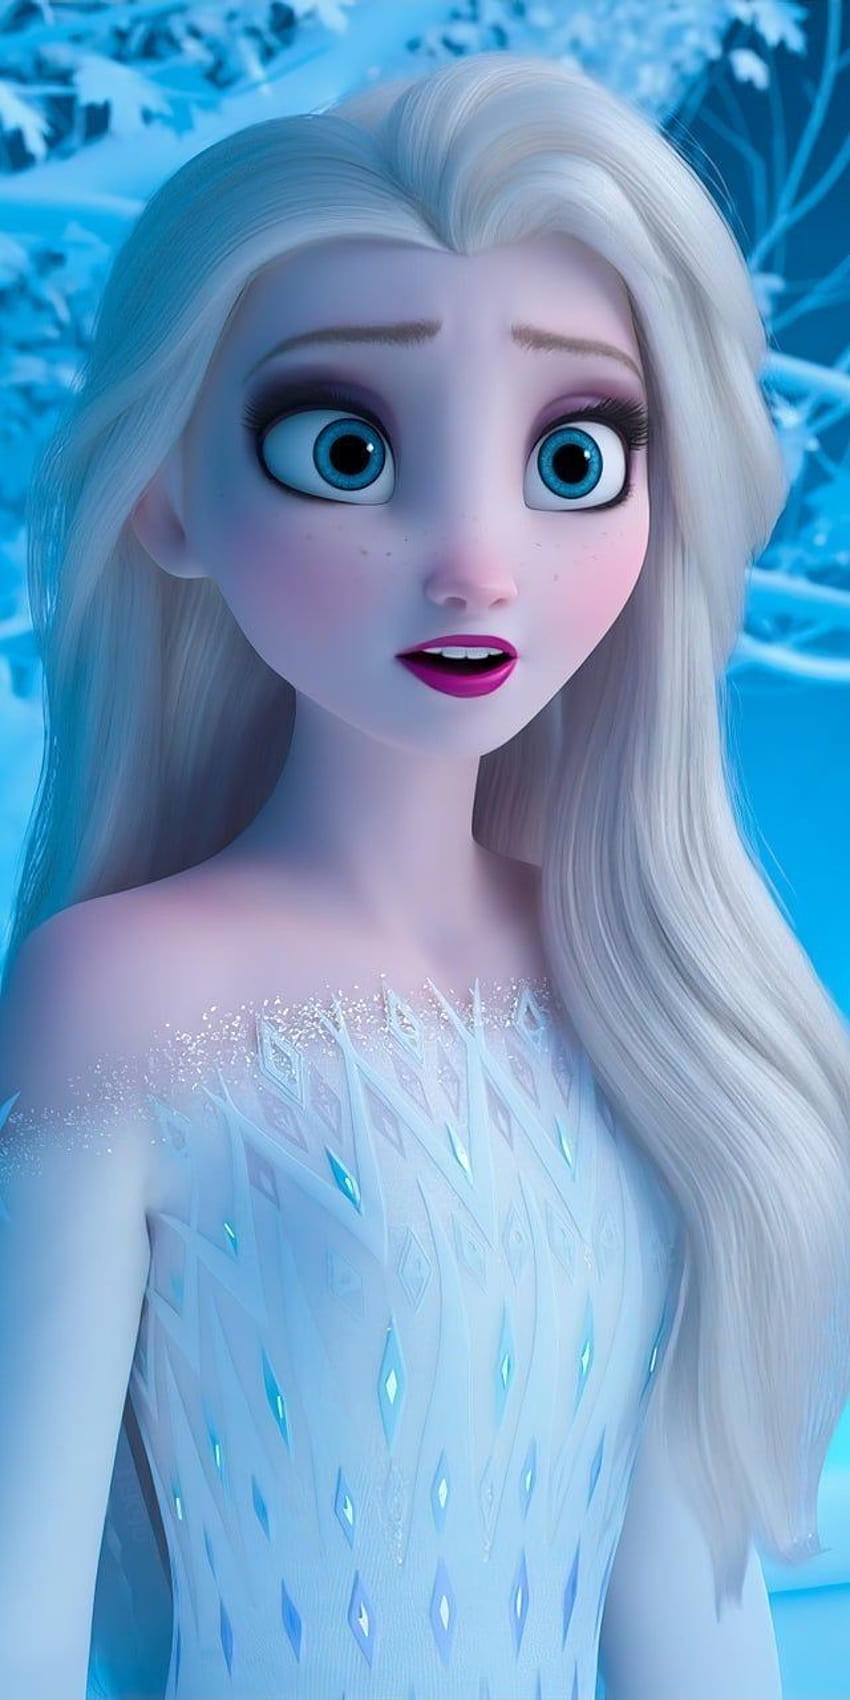 Kustomisasi 3D selimut penutup Frozen2 Elsa & Anna pada tahun 2020, android beku dan barbie wallpaper ponsel HD